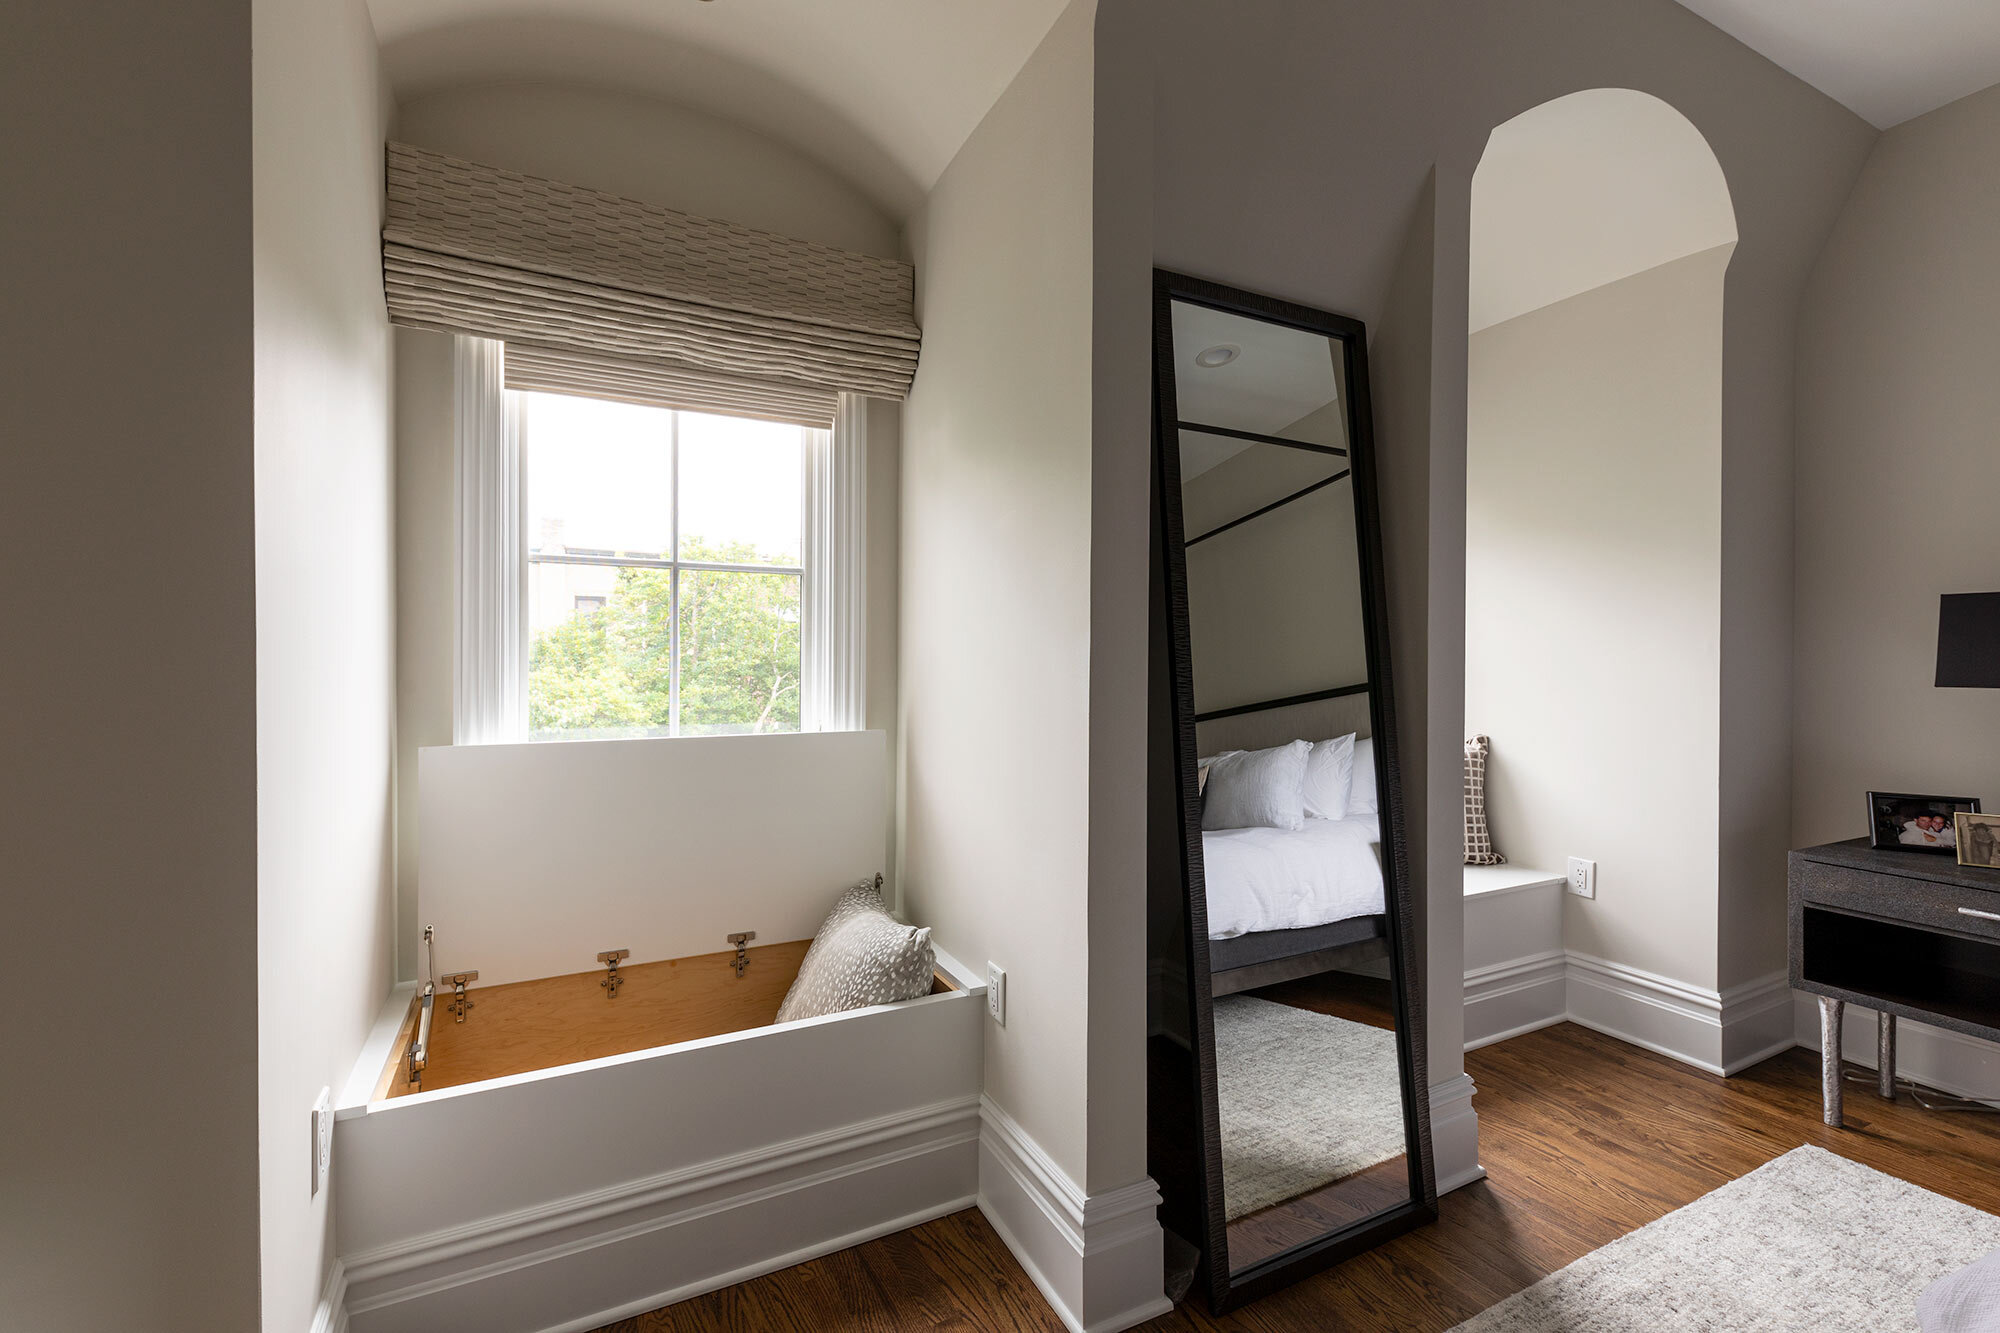 thompson-renovations-contractor-home-window-bedroom-hoboken-townhouse-interior-design.jpg